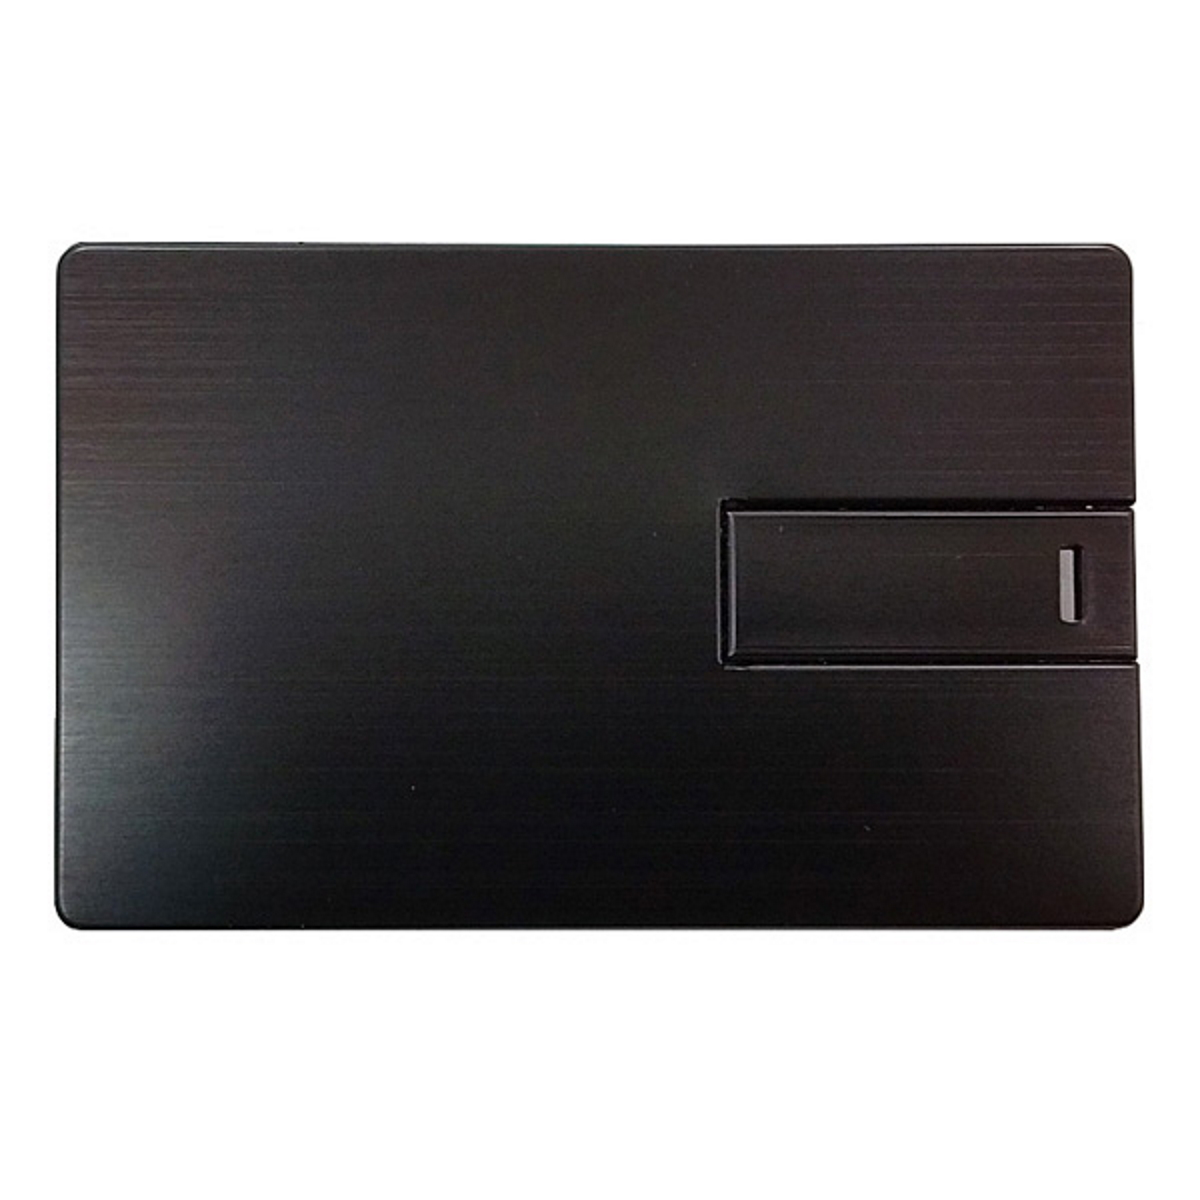 GB) USB 8 ® (Schwarz, USB-Stick Metall-Kreditkarte GERMANY